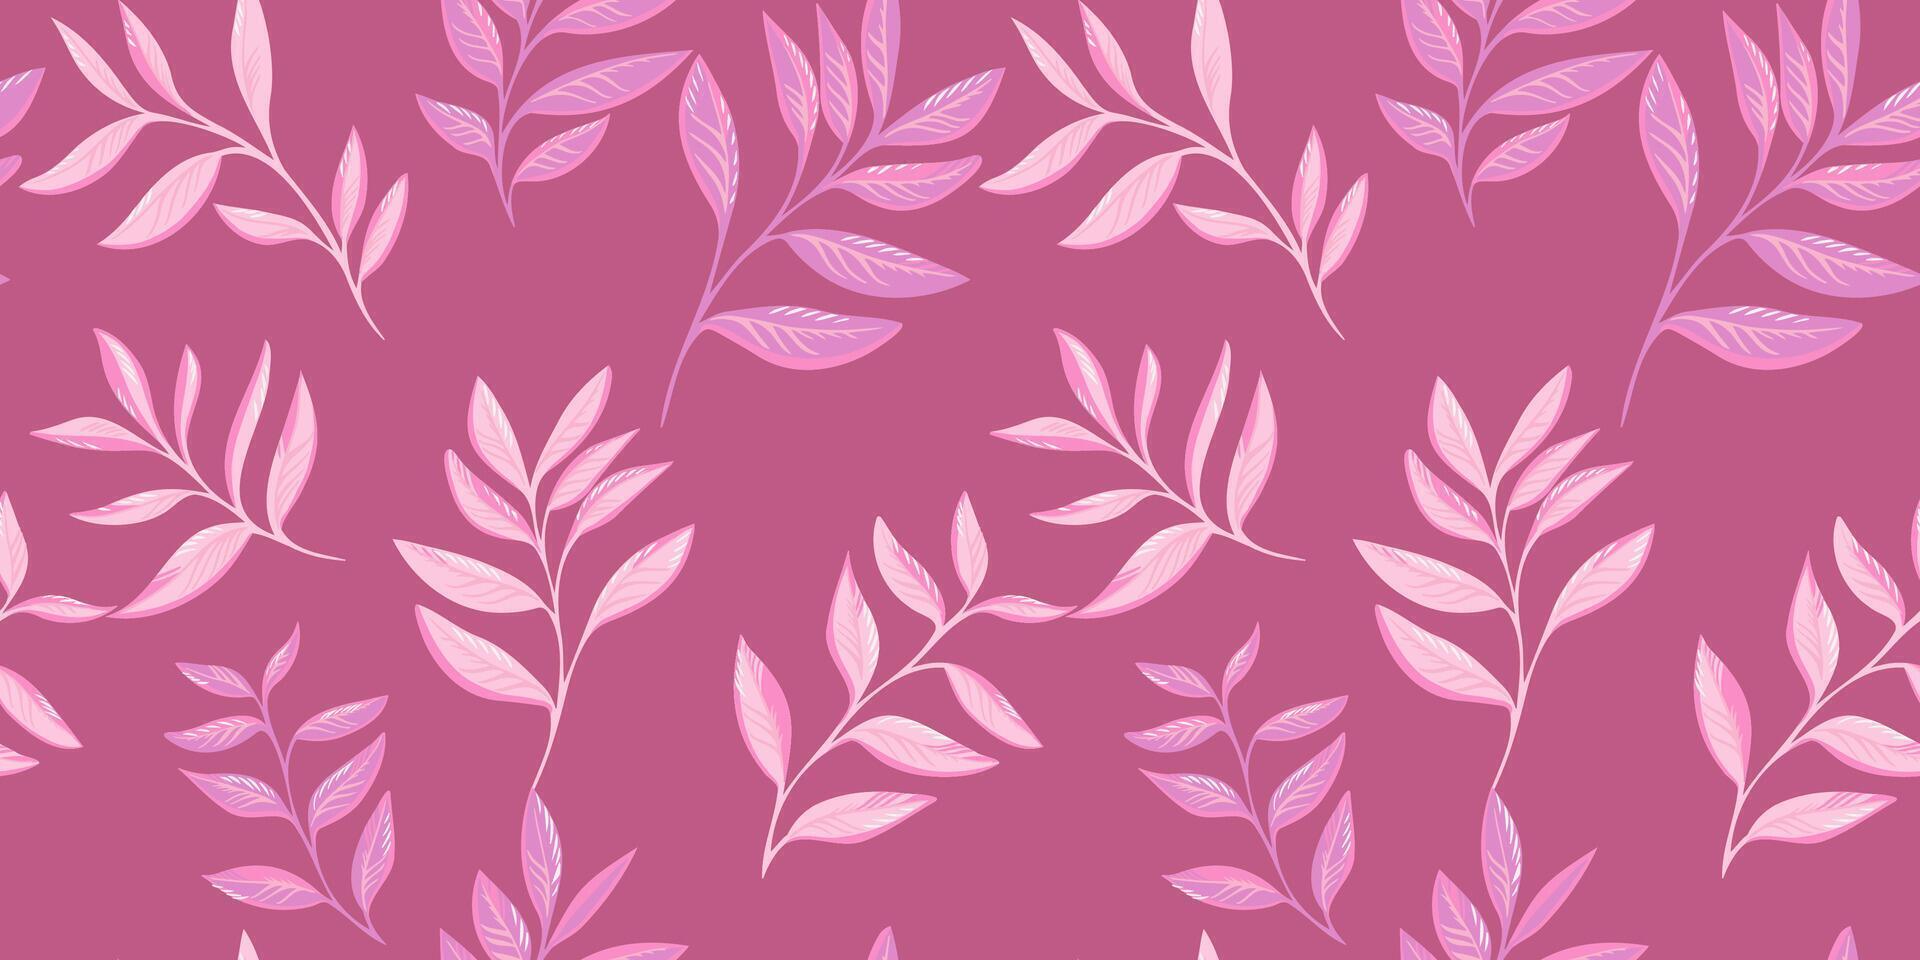 le minimaliste Facile feuilles branches modèle est épars au hasard. rose abstrait, stylisé tropical floral impression. vecteur main dessiné.modèle pour conception, textile, mode, imprimer, en tissu